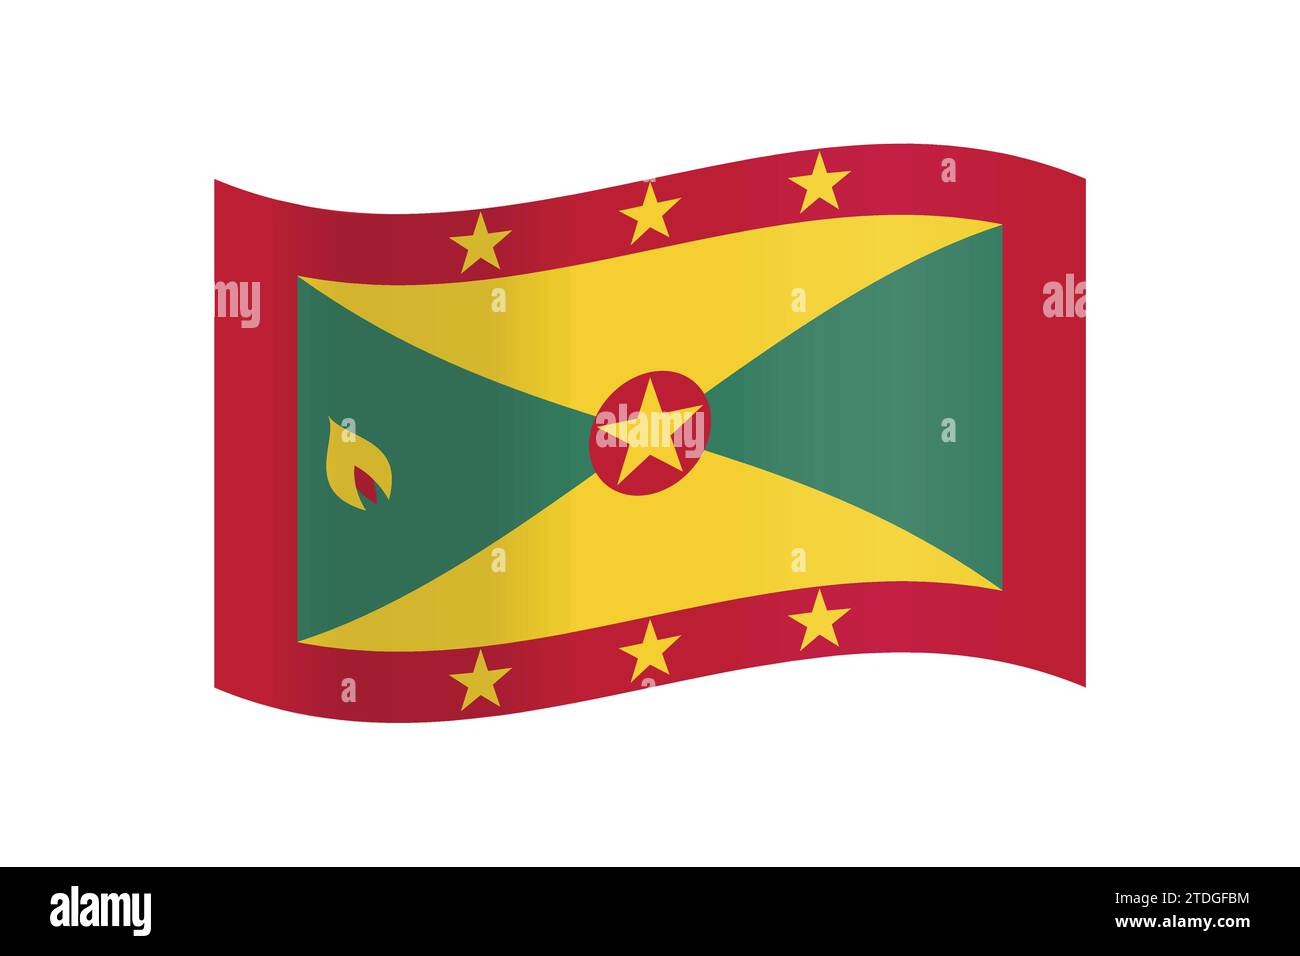 Eine detaillierte und genaue Vektor-Illustration der farbigen Flagge Grenada Stock Vektor